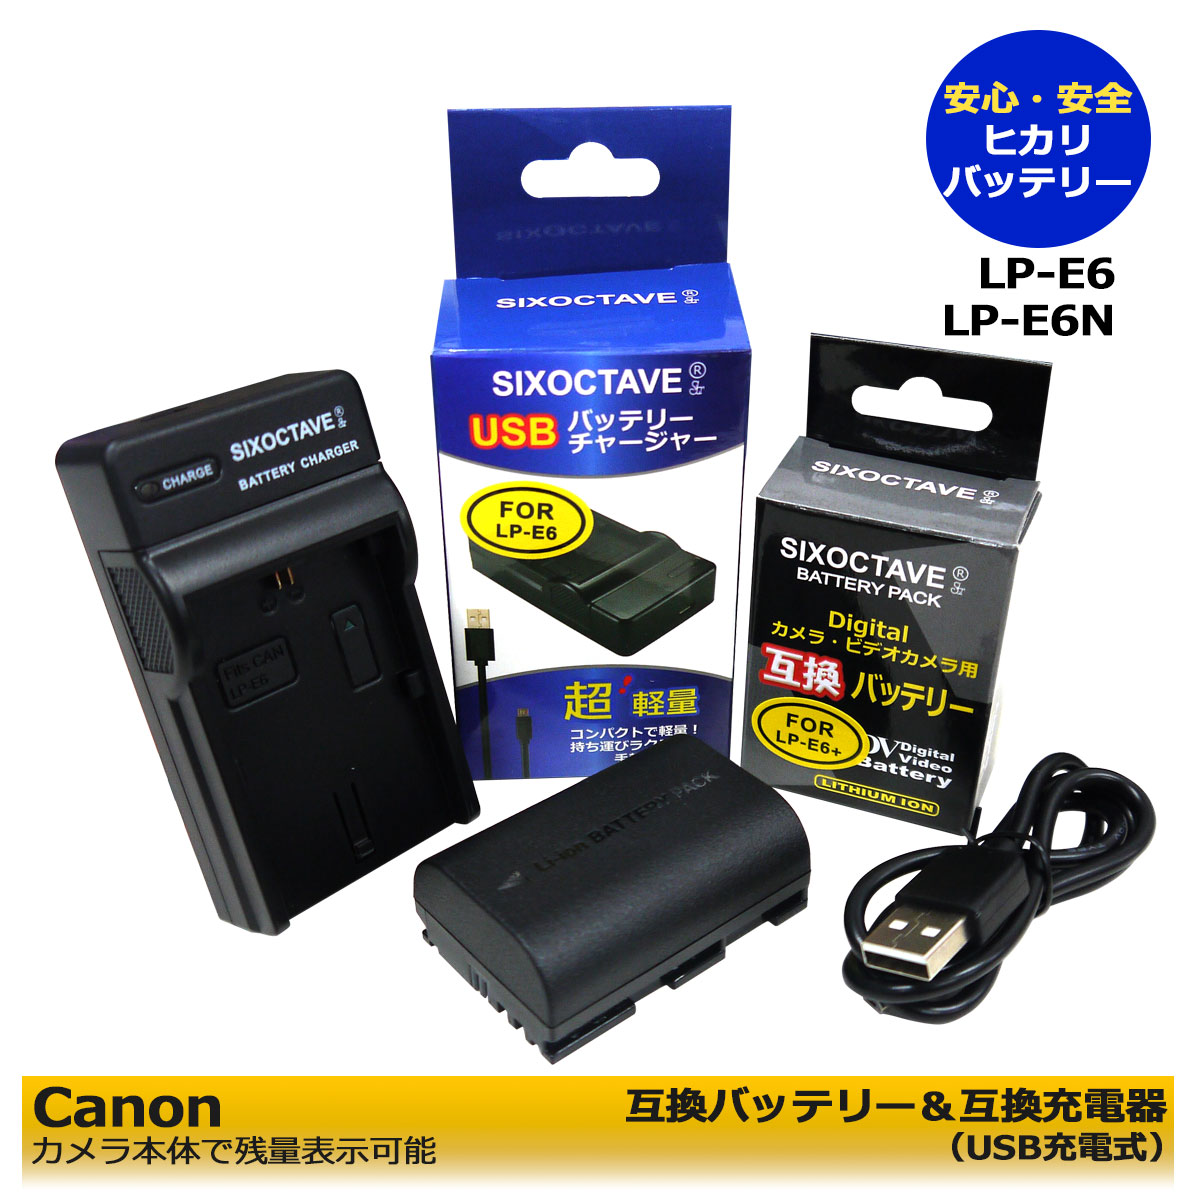 CANON キャノン LP-E6N 互換バッテリ...の商品画像